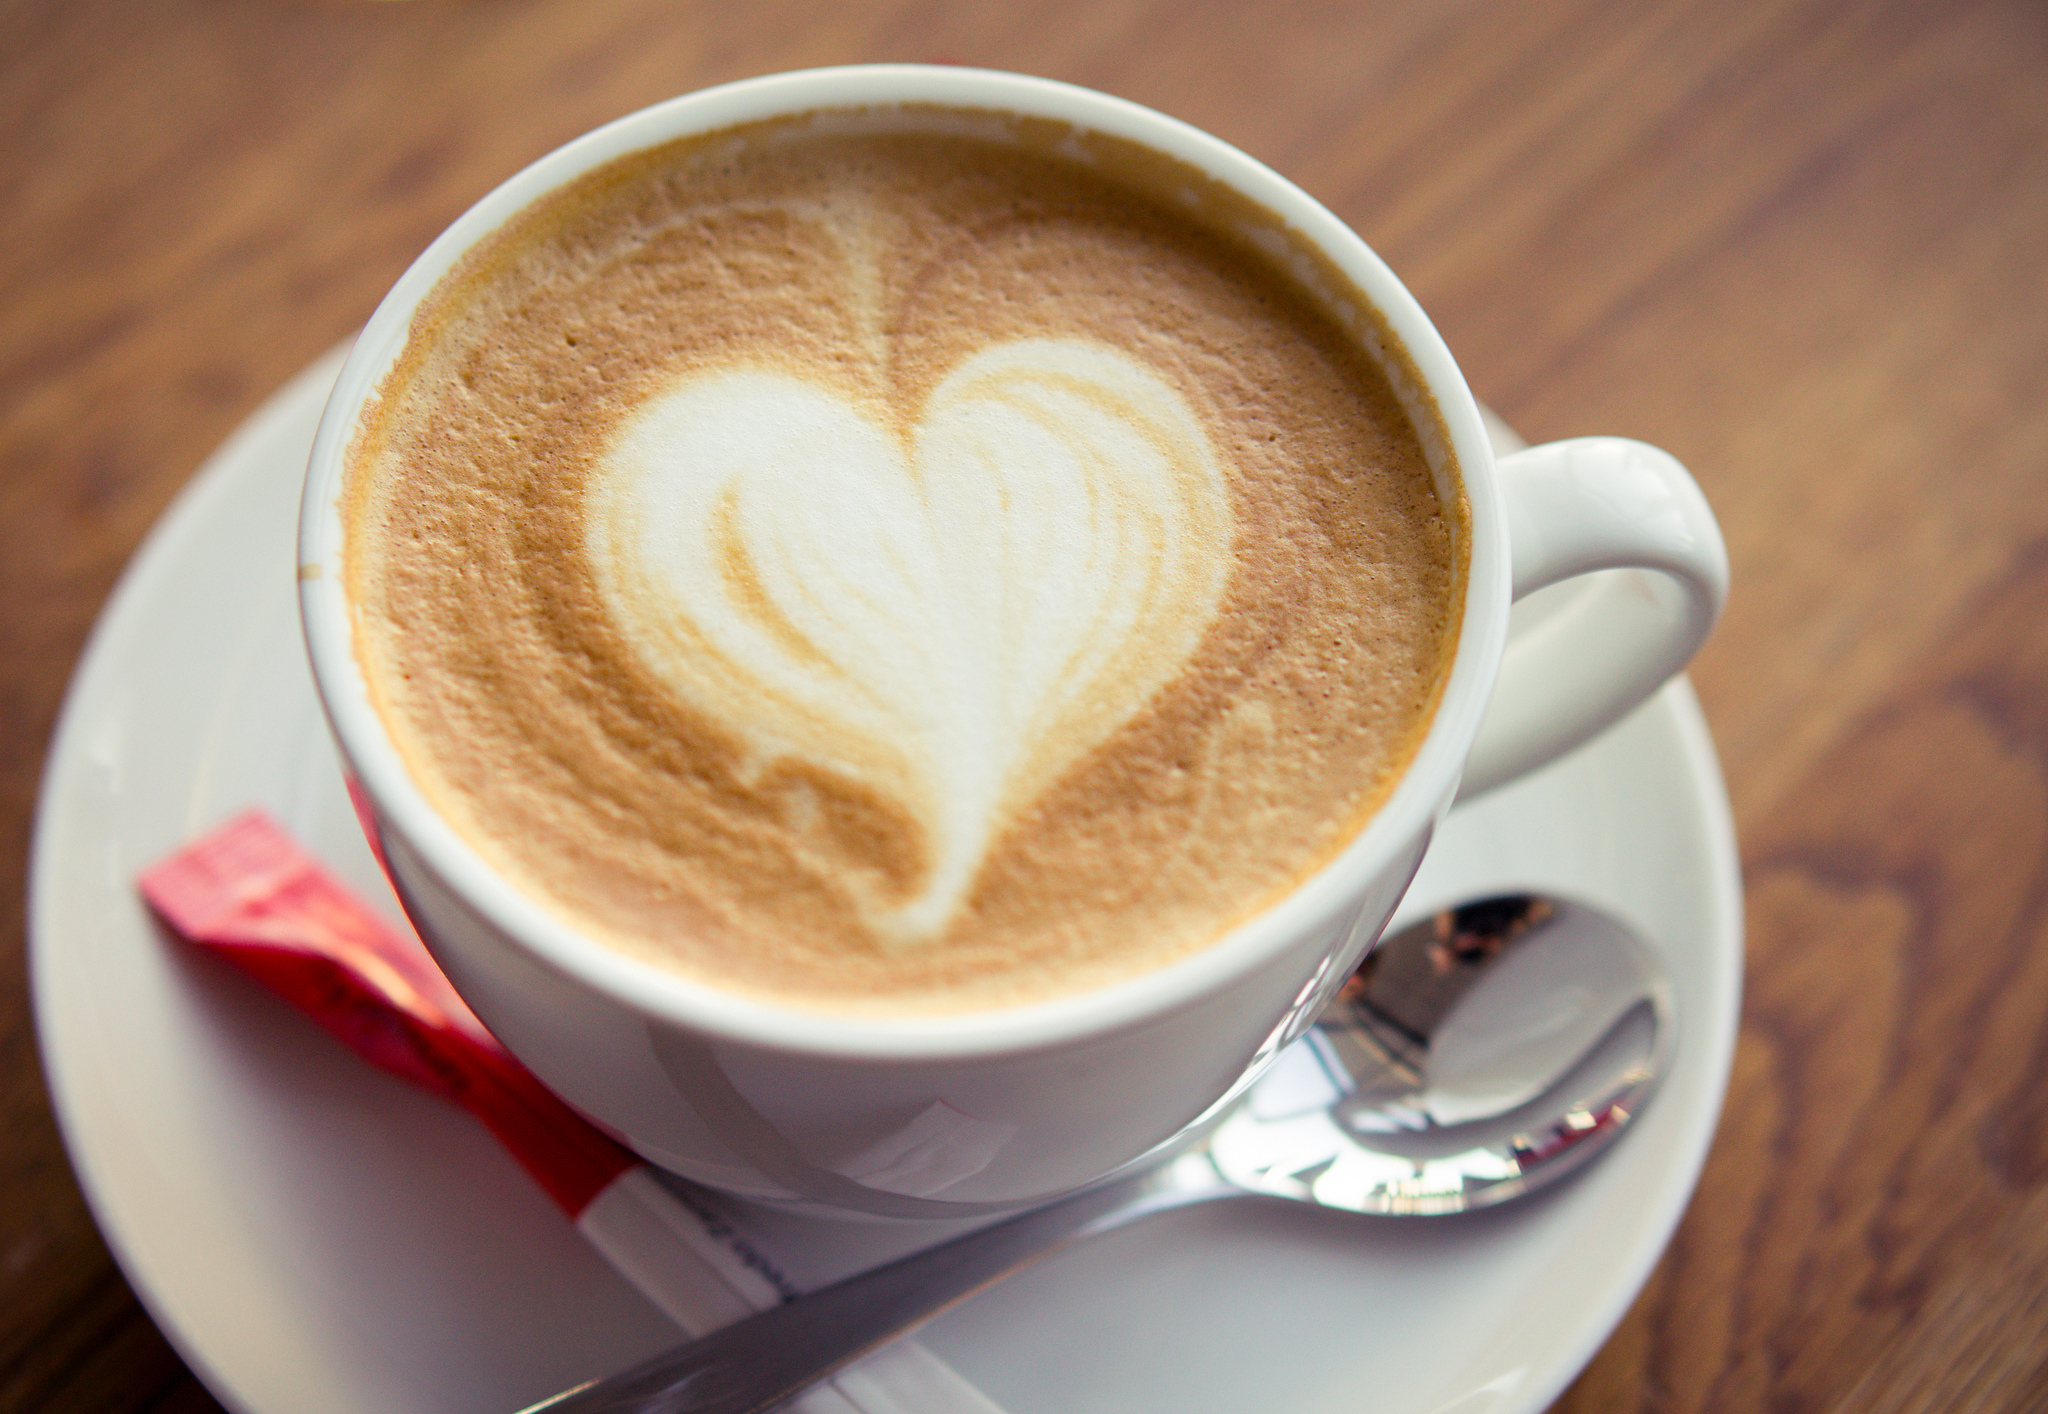 Coffee Love Wallpaper - Coffee With Heart Foam , HD Wallpaper & Backgrounds